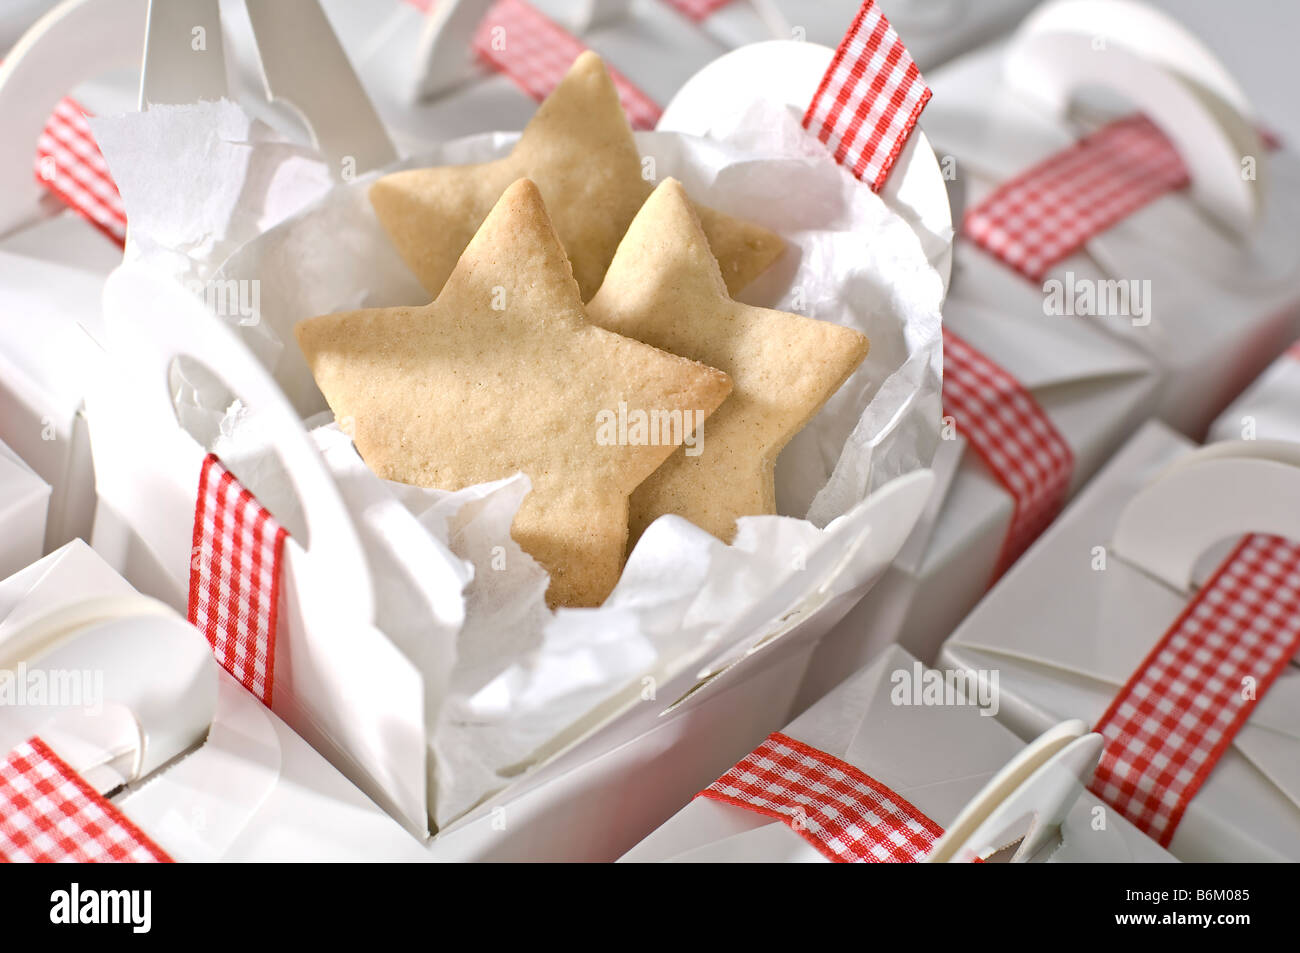 Découper des biscuits en forme d'étoile d'être emballés dans de simples boîtes blanc ordinaire pour les cadeaux à Noël. Attachés avec du ruban vichy rouge Banque D'Images